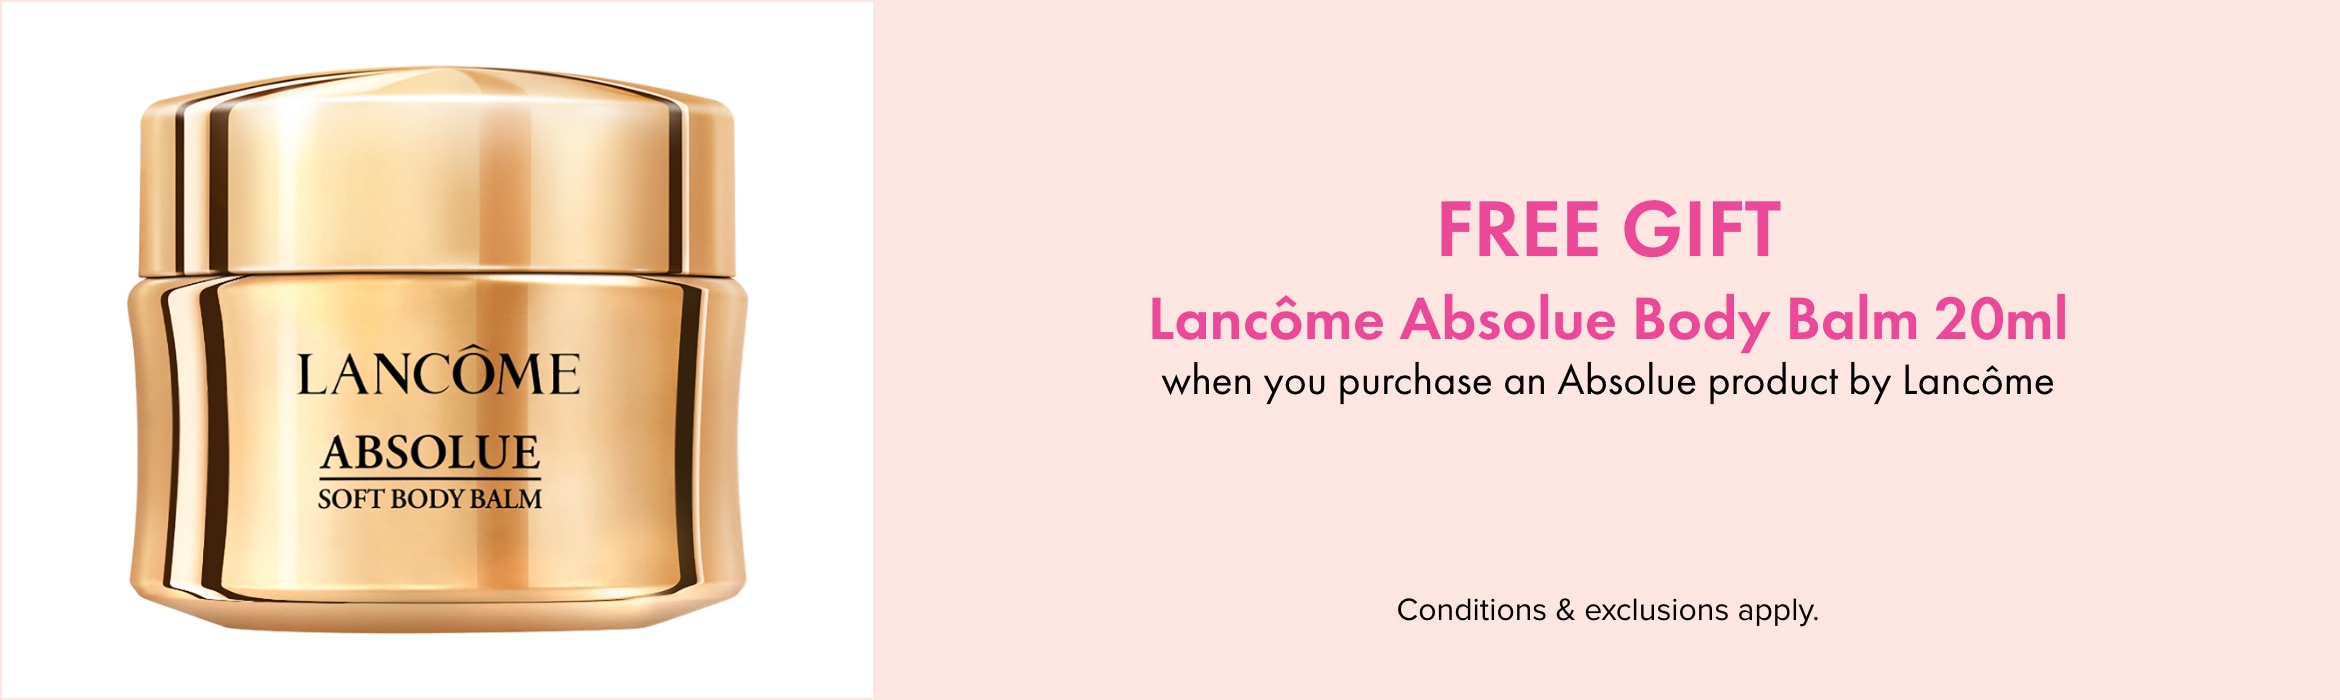 FREE GIFT Lancôme Absolue Body Balm 20ml